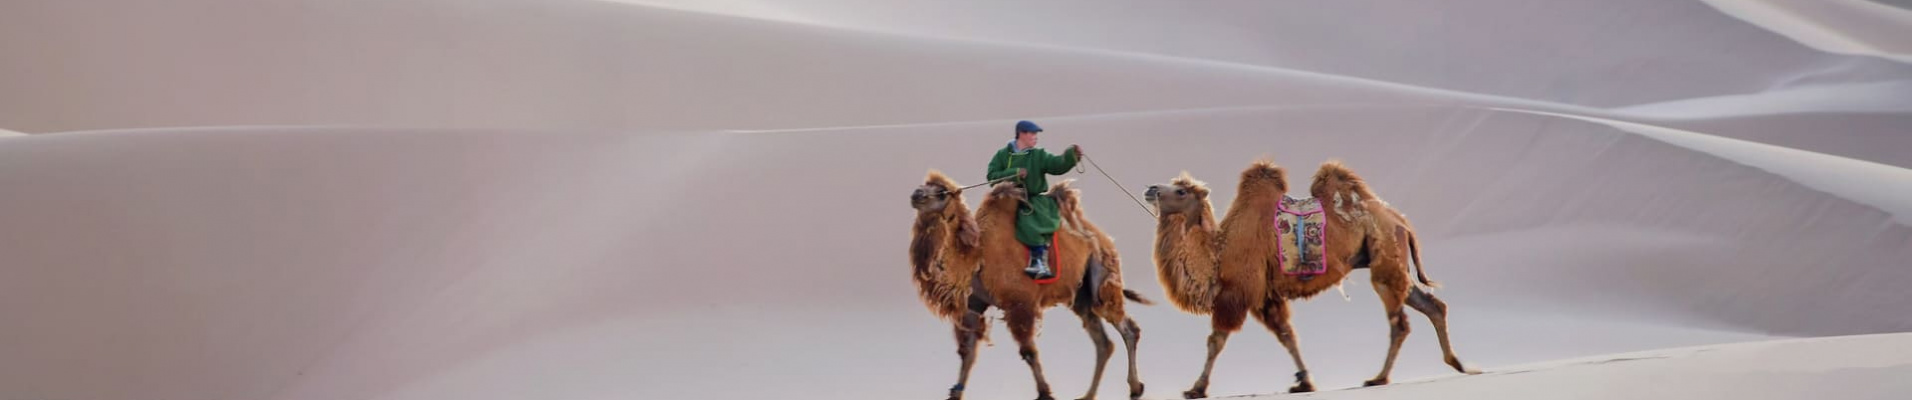 chameaux-desert-gobi-mongolie